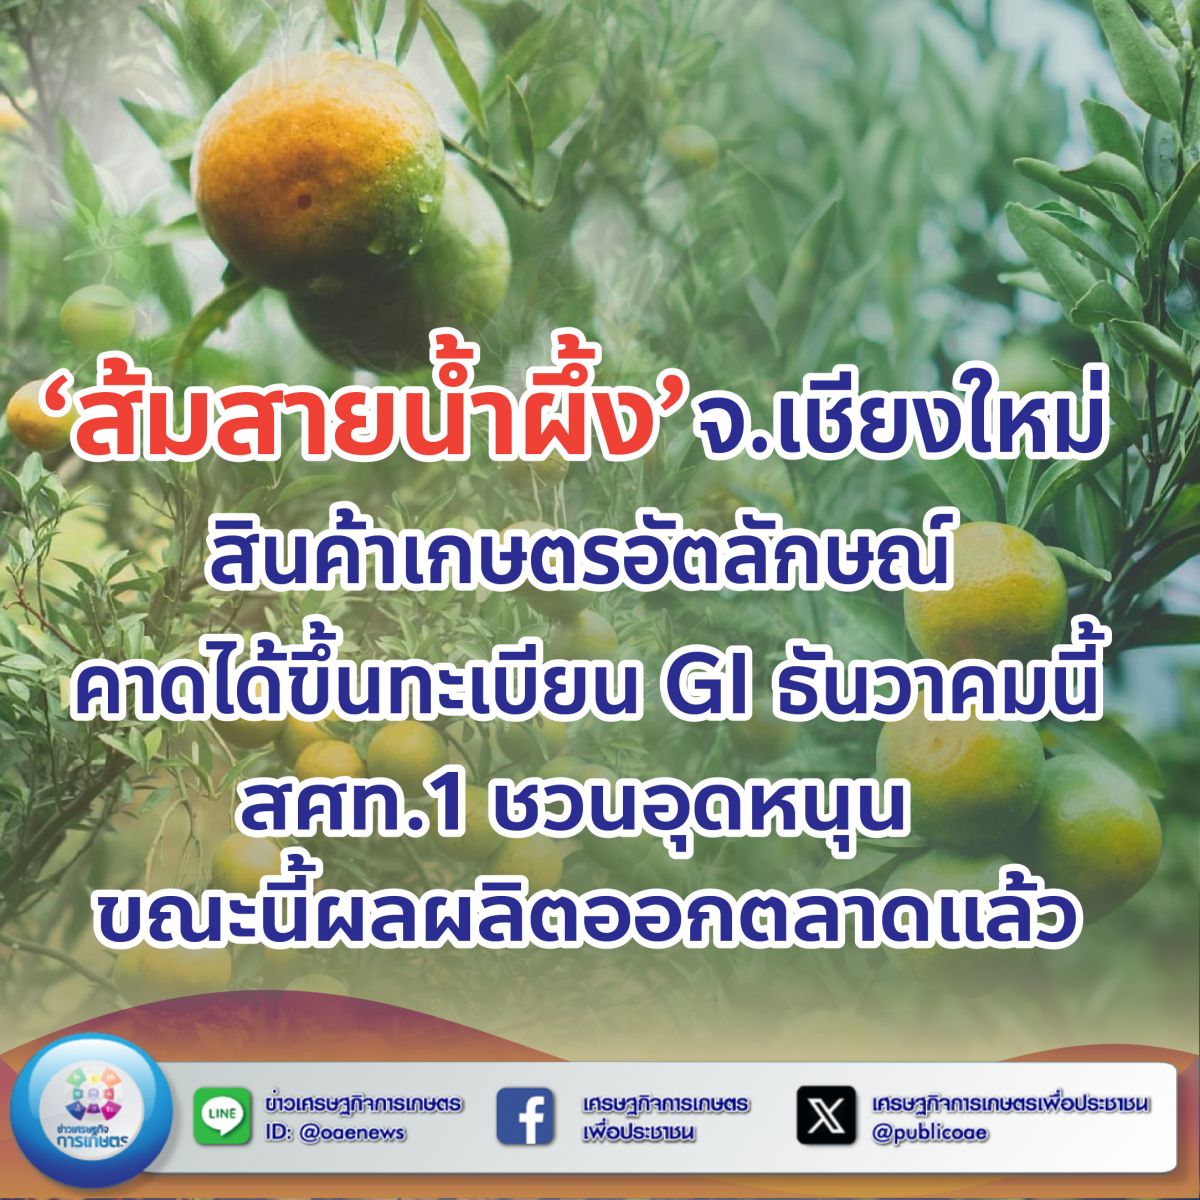 ‘ส้มสายน้ำผึ้ง’ จ.เชียงใหม่ สินค้าเกษตรอัตลักษณ์ คาดได้ขึ้นทะเบียน GI ธันวาคมนี้ สศท.1 ชวนอุดหนุน ขณะนี้ผลผลิตออกตลาดแล้ว